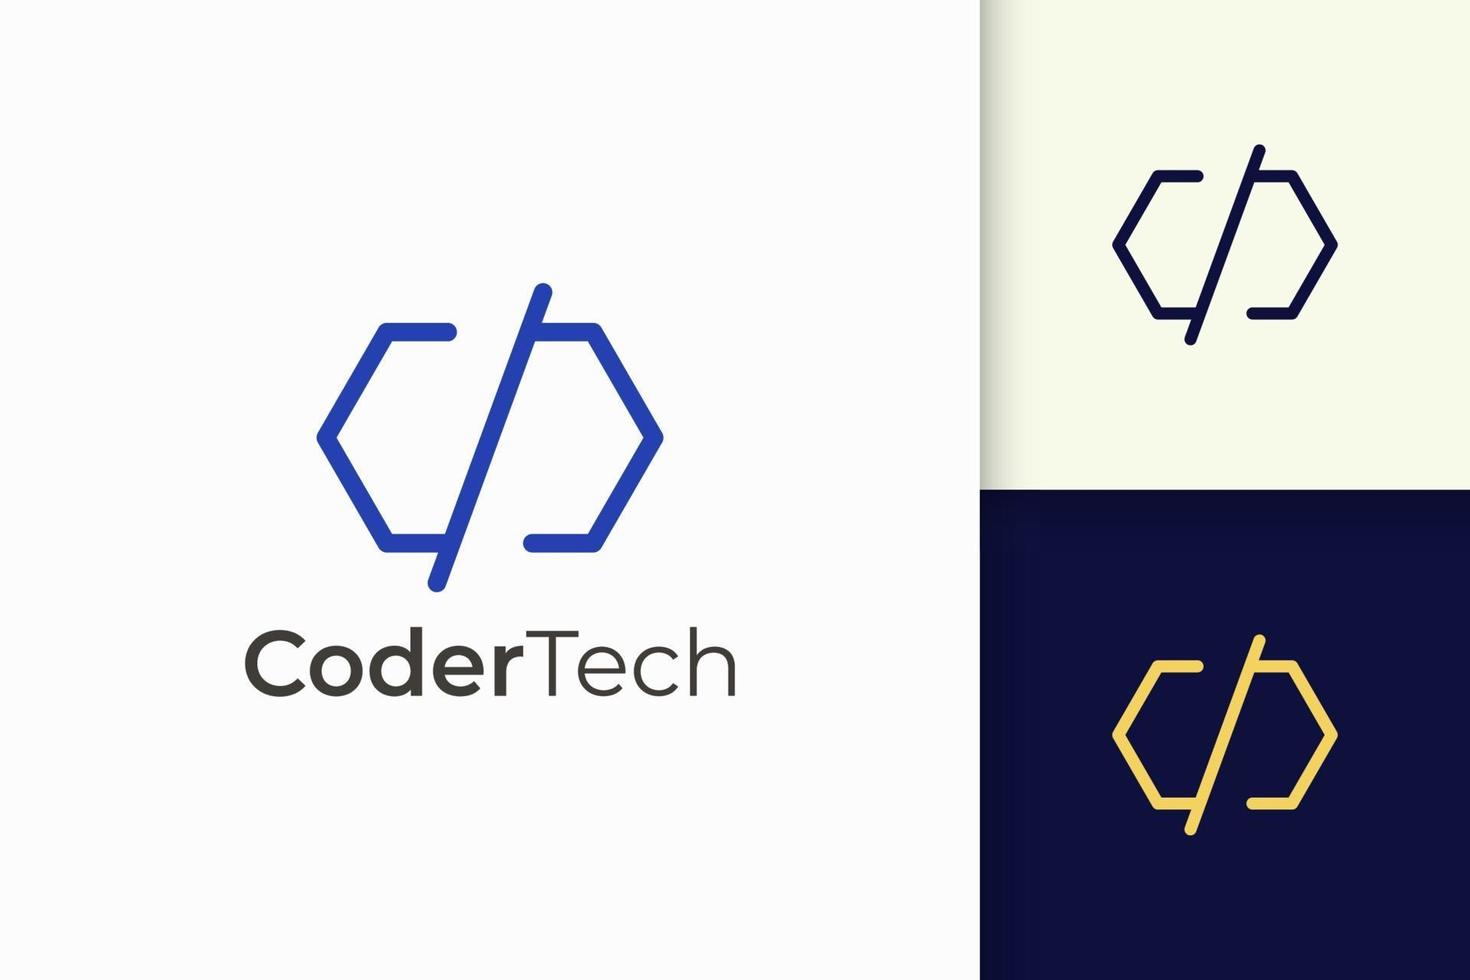 programmeur ou développeur logo en simple et moderne pour une entreprise technologique vecteur